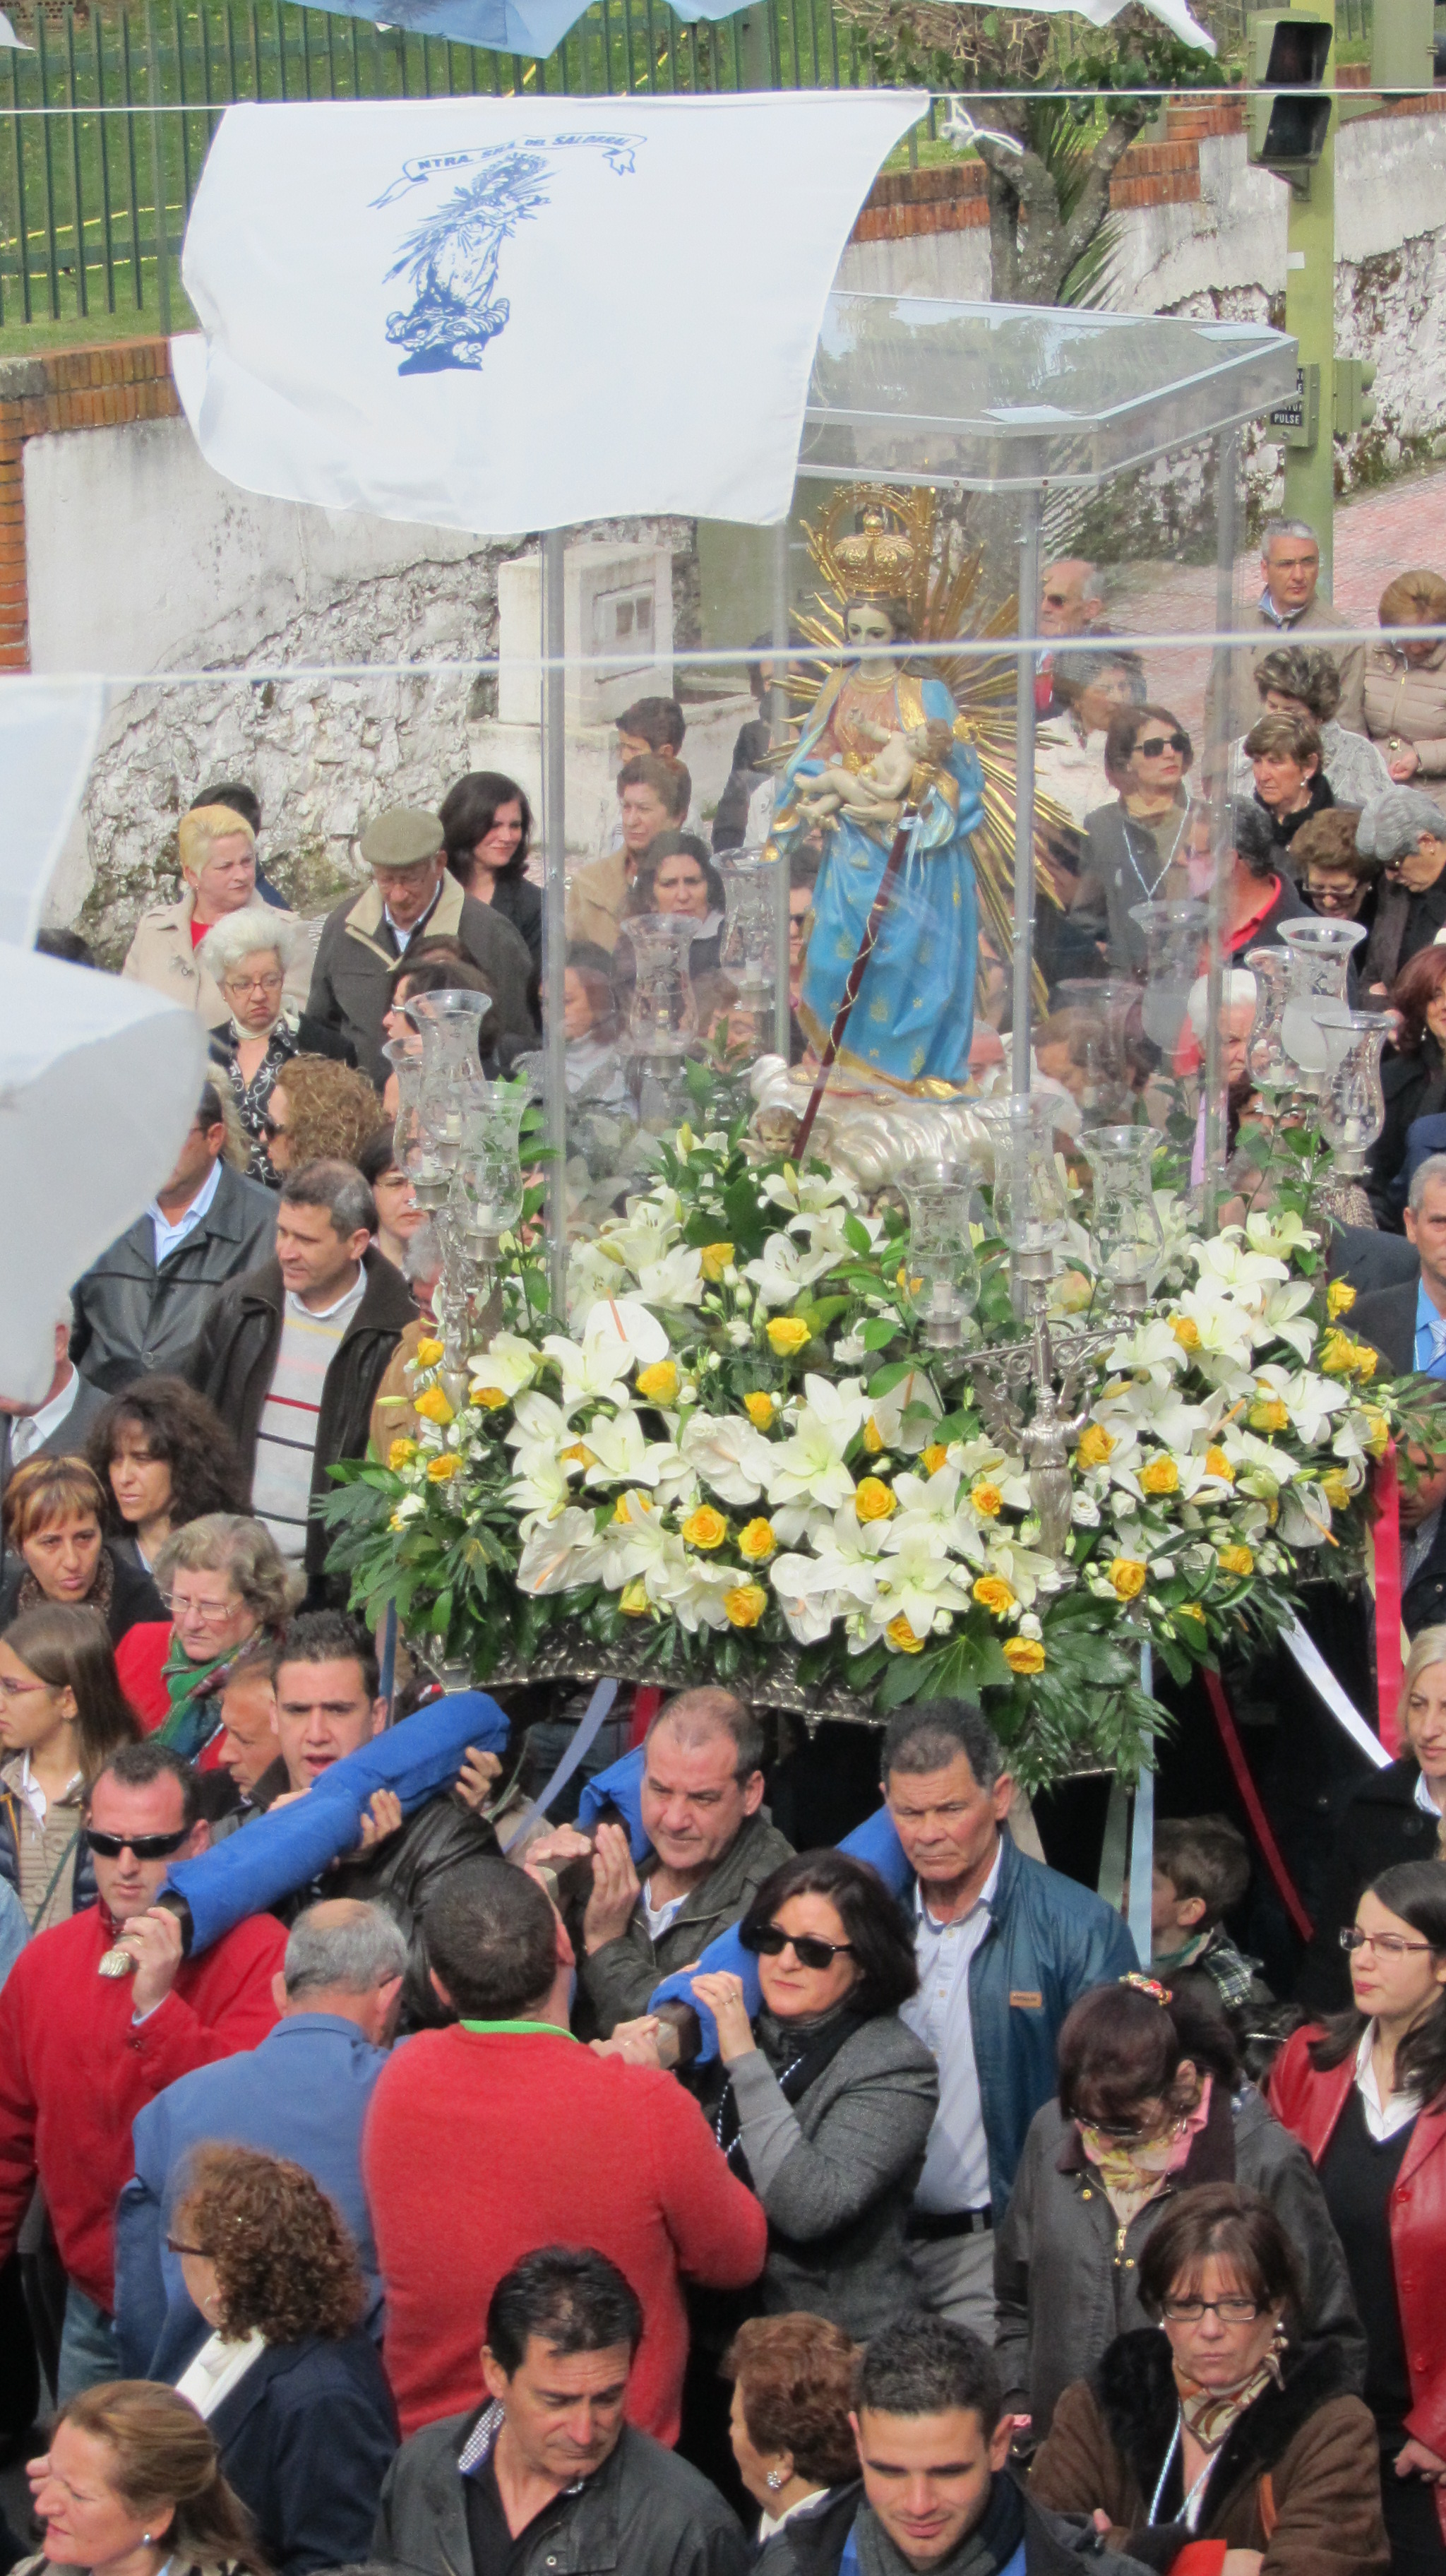 Día grande de las fiestas patronales en honor de la Virgen del Salobrar